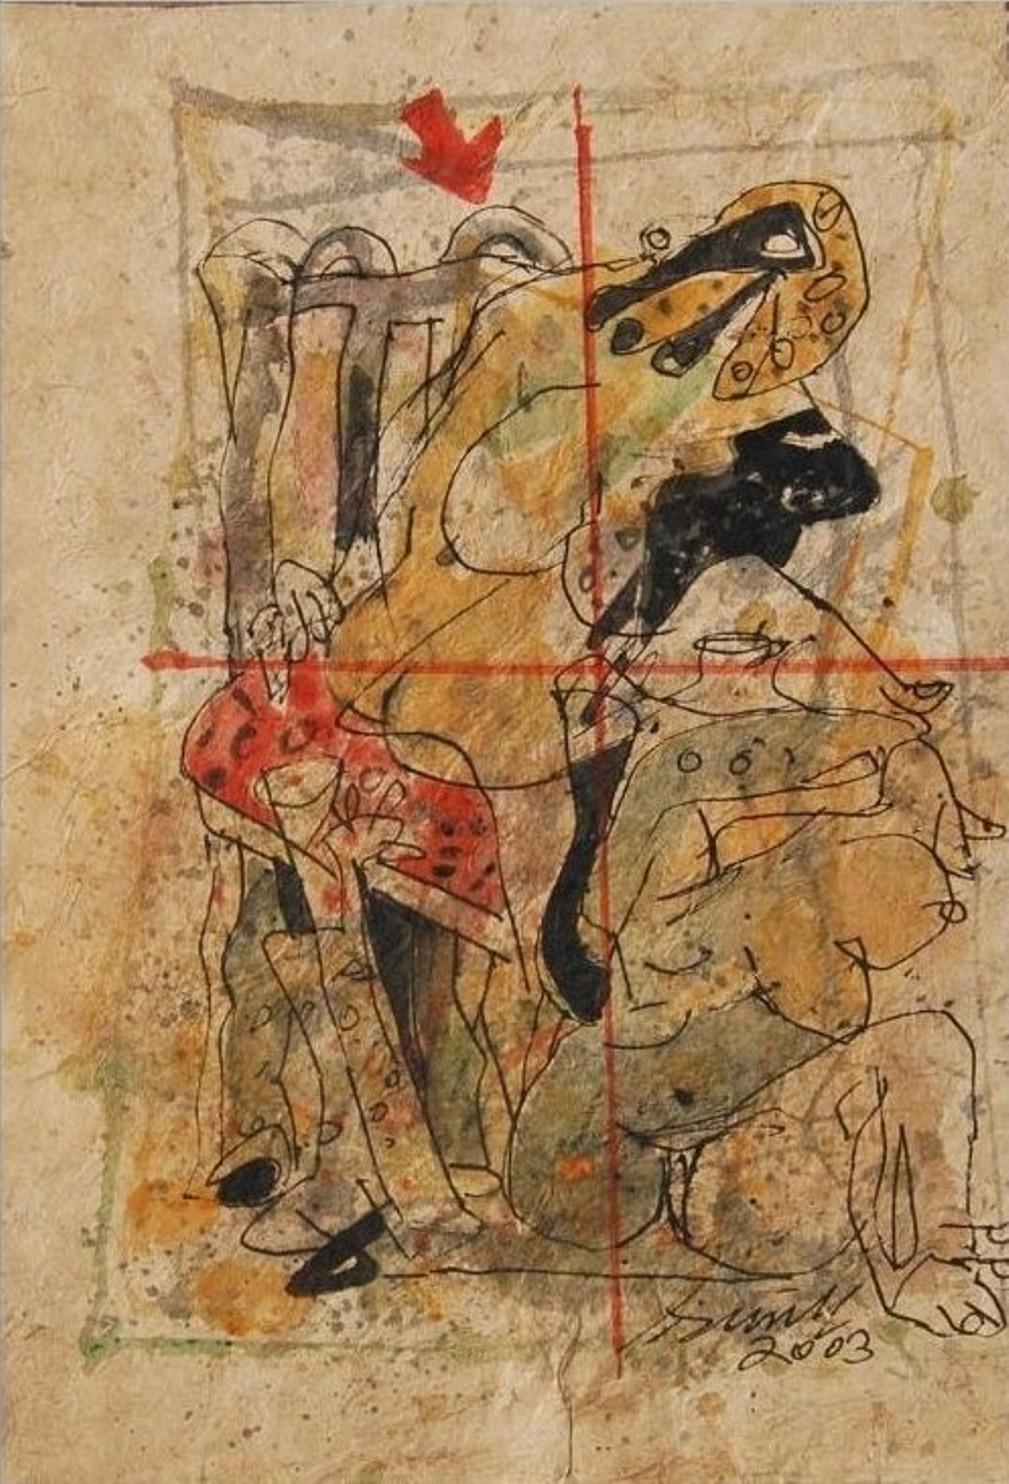 Sunil Das - Dessins en couleur, 
13 x 9.5 pouces (formats non encadrés)
Acrylique, aquarelle, plume et encre sur papier fait main, 2003
( Non encadré et livré )

Sunil Das (1939-2015) était un maître de l'art indien moderne originaire du Bengale.